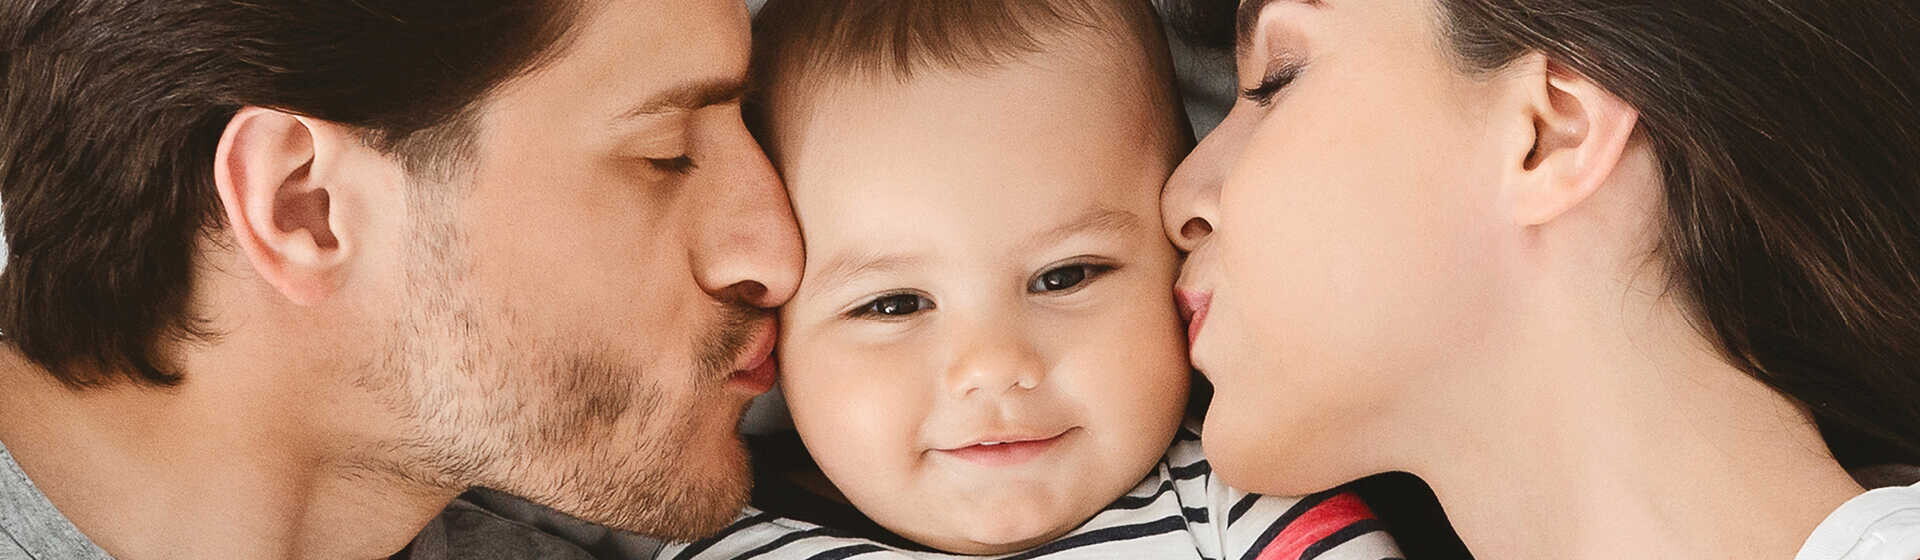 זוג הורים מנשקים עם תינוקם משני צידיו כשהוא שמח במרכז